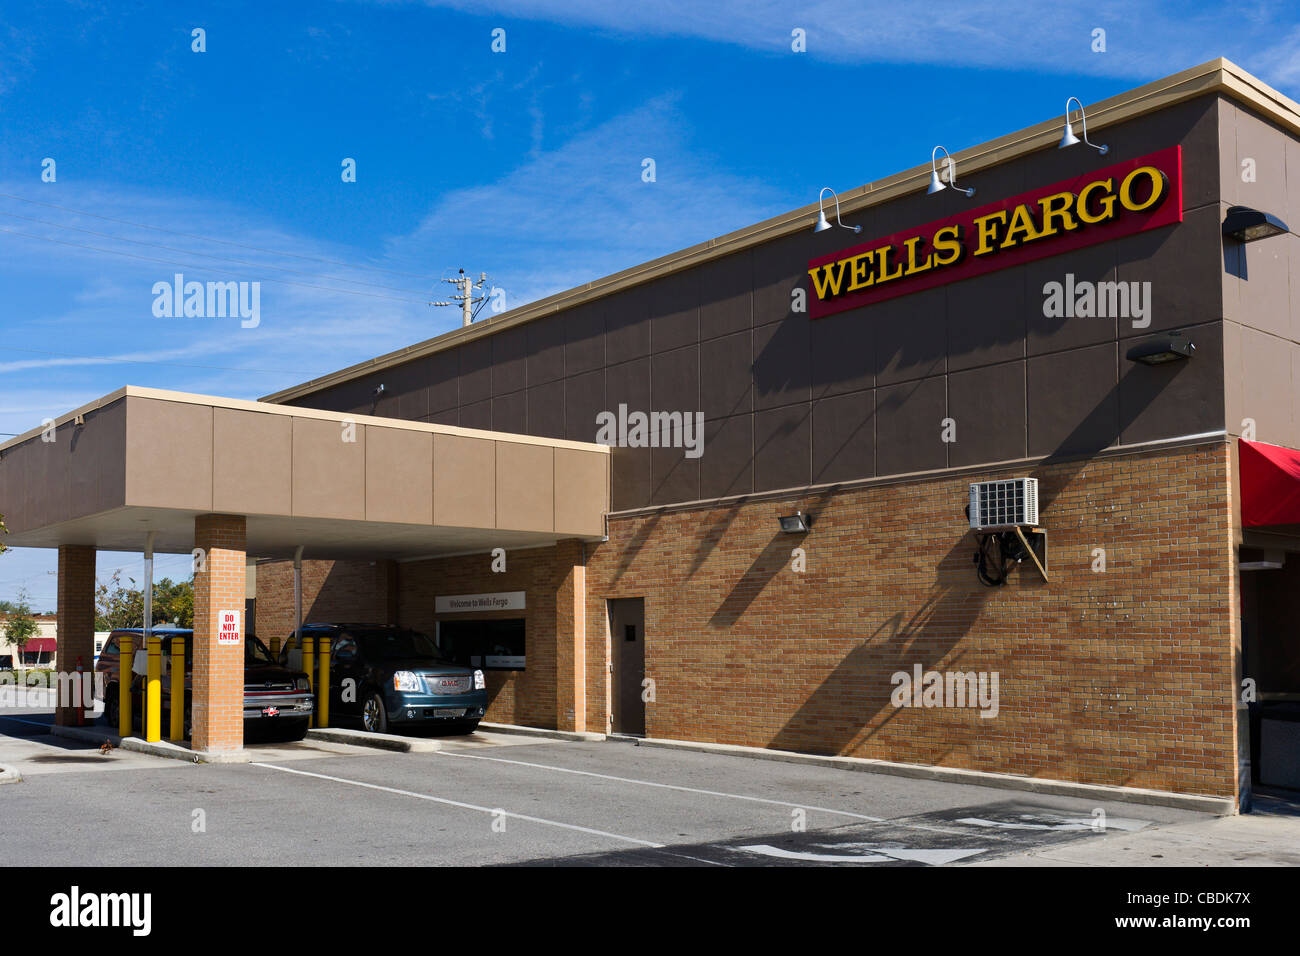 Guidare attraverso gli sportelli presso una filiale della Banca Wells Fargo Bank, lago del Galles, Central Florida, Stati Uniti d'America Foto Stock